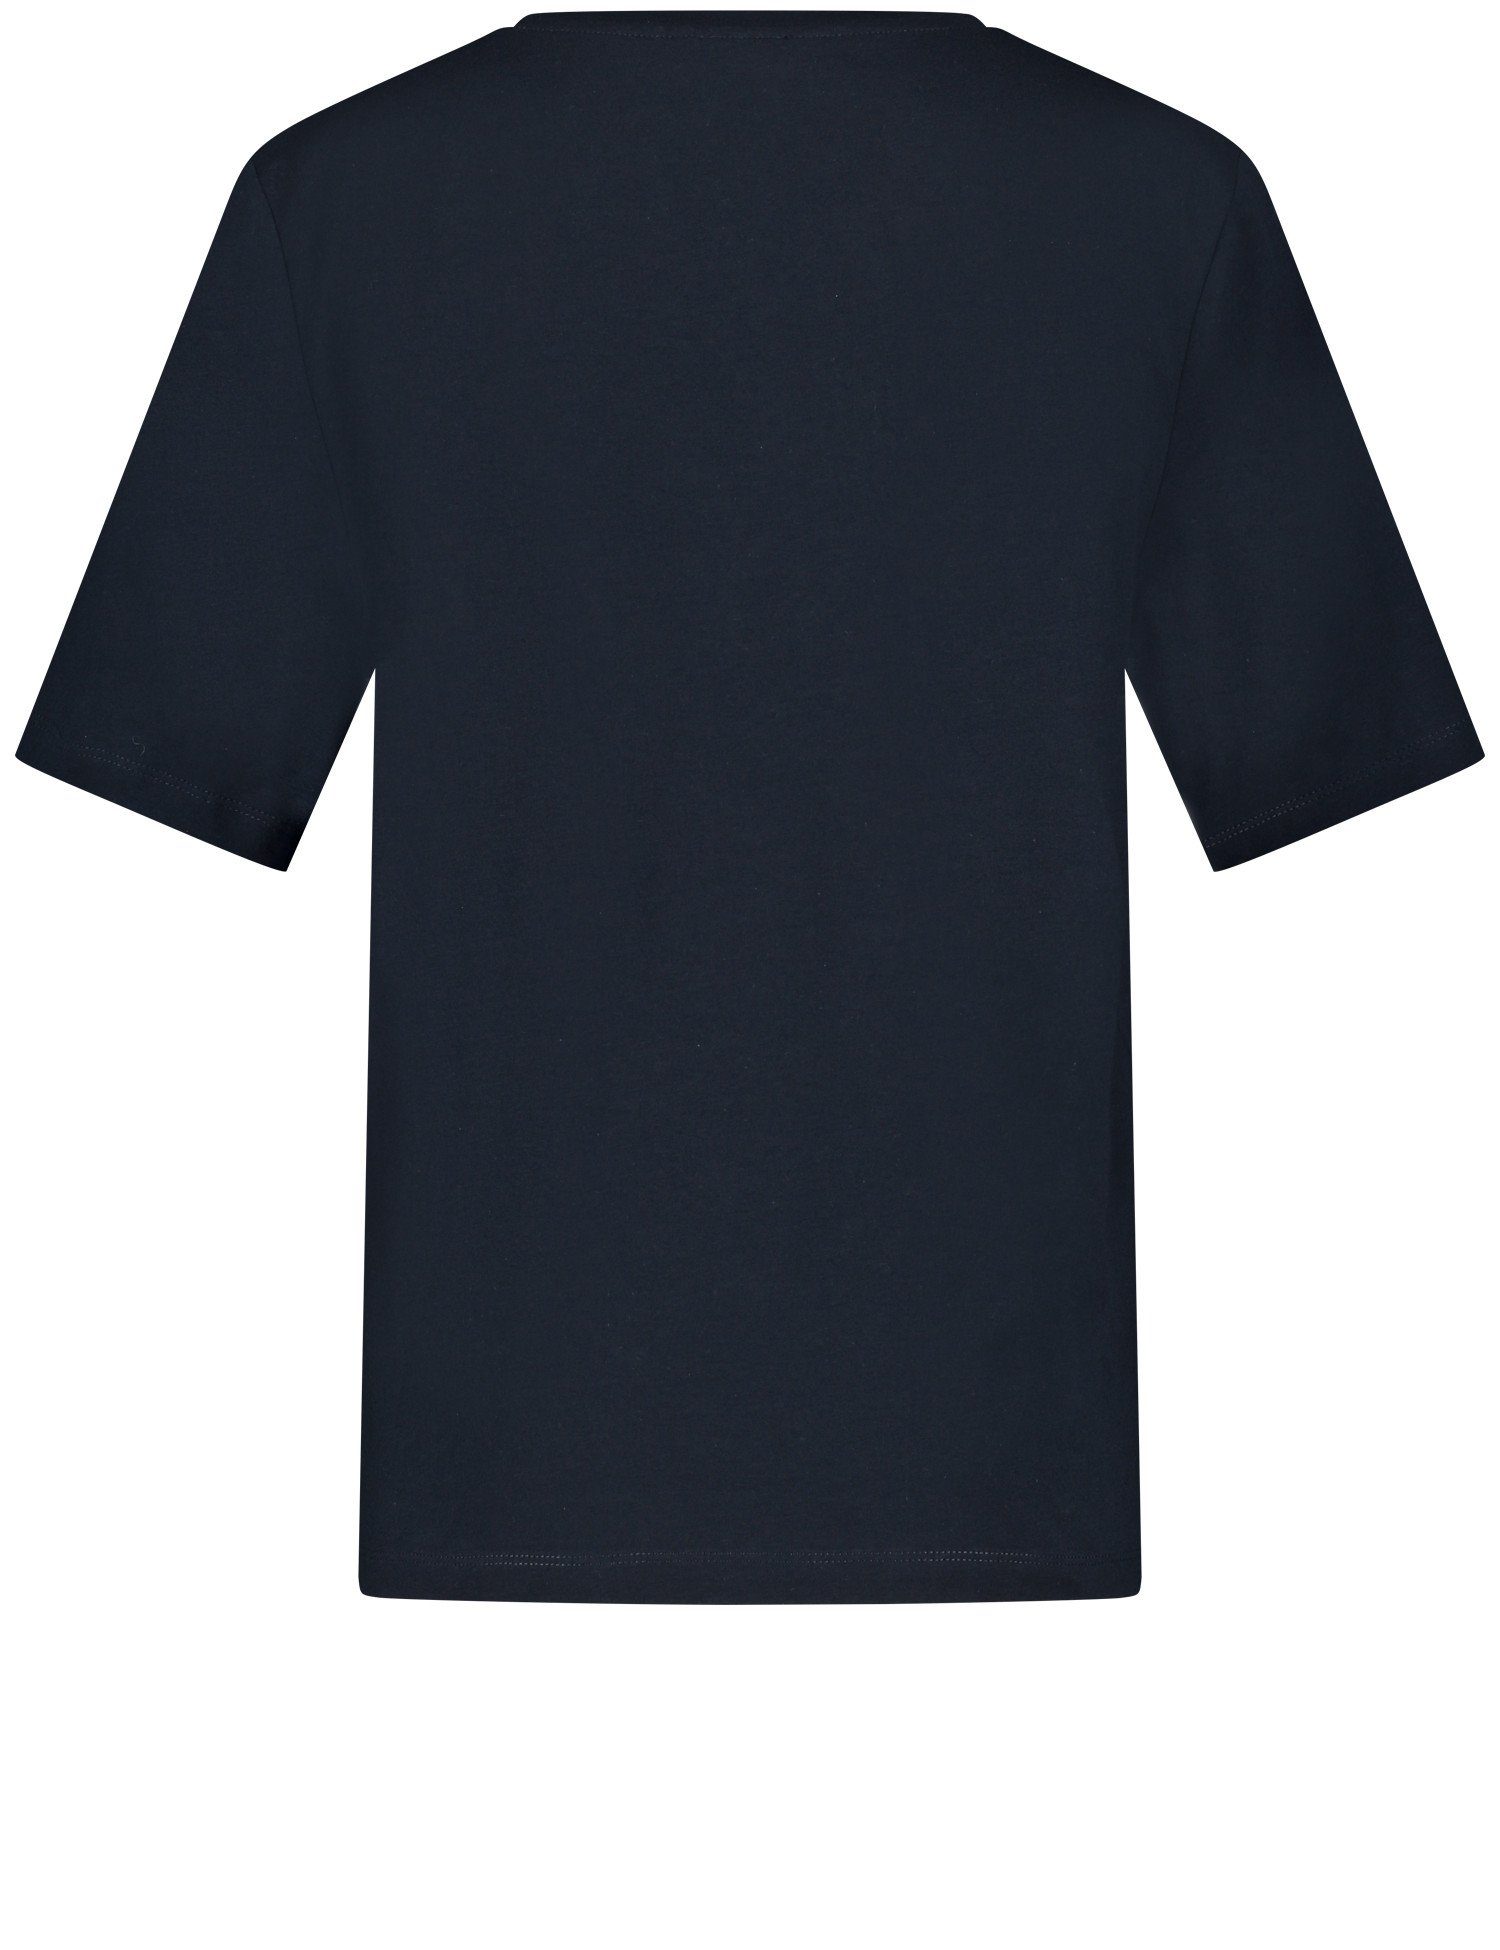 GERRY WEBER mit T-Shirt Wording-Print navy Kurzarmshirt